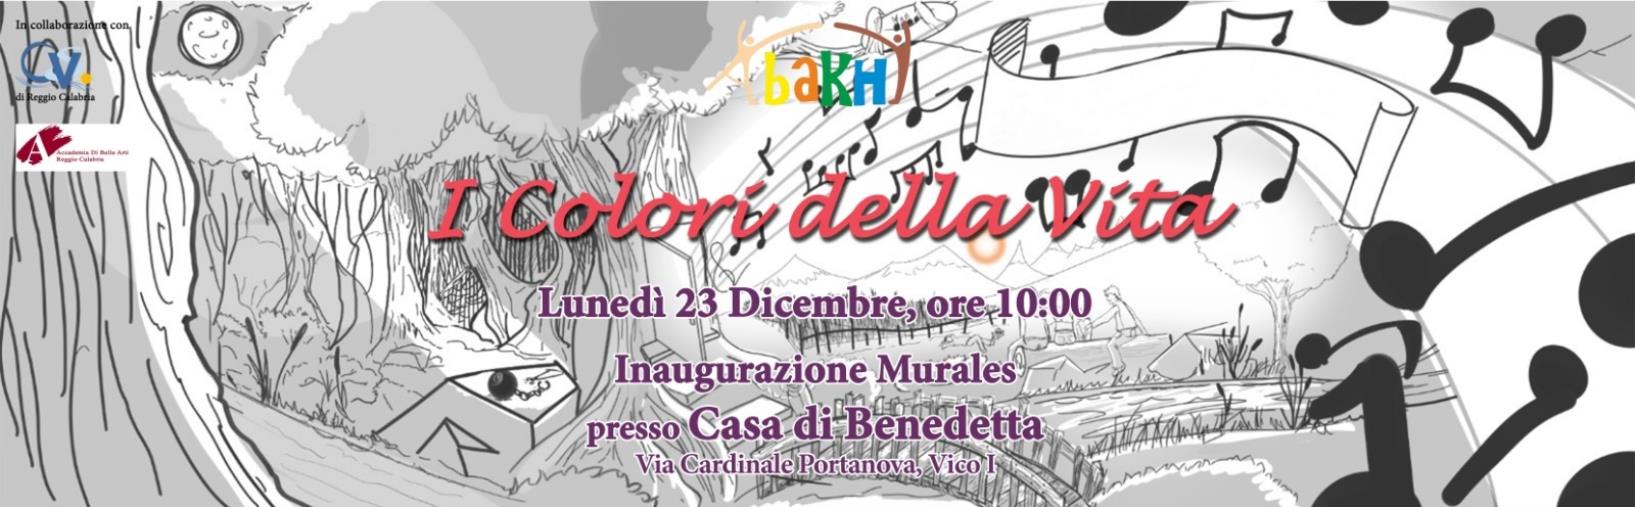 Lunedì l'inaugurazione del Murales "I colori della vita" in una struttura per minori di Reggio Calabria